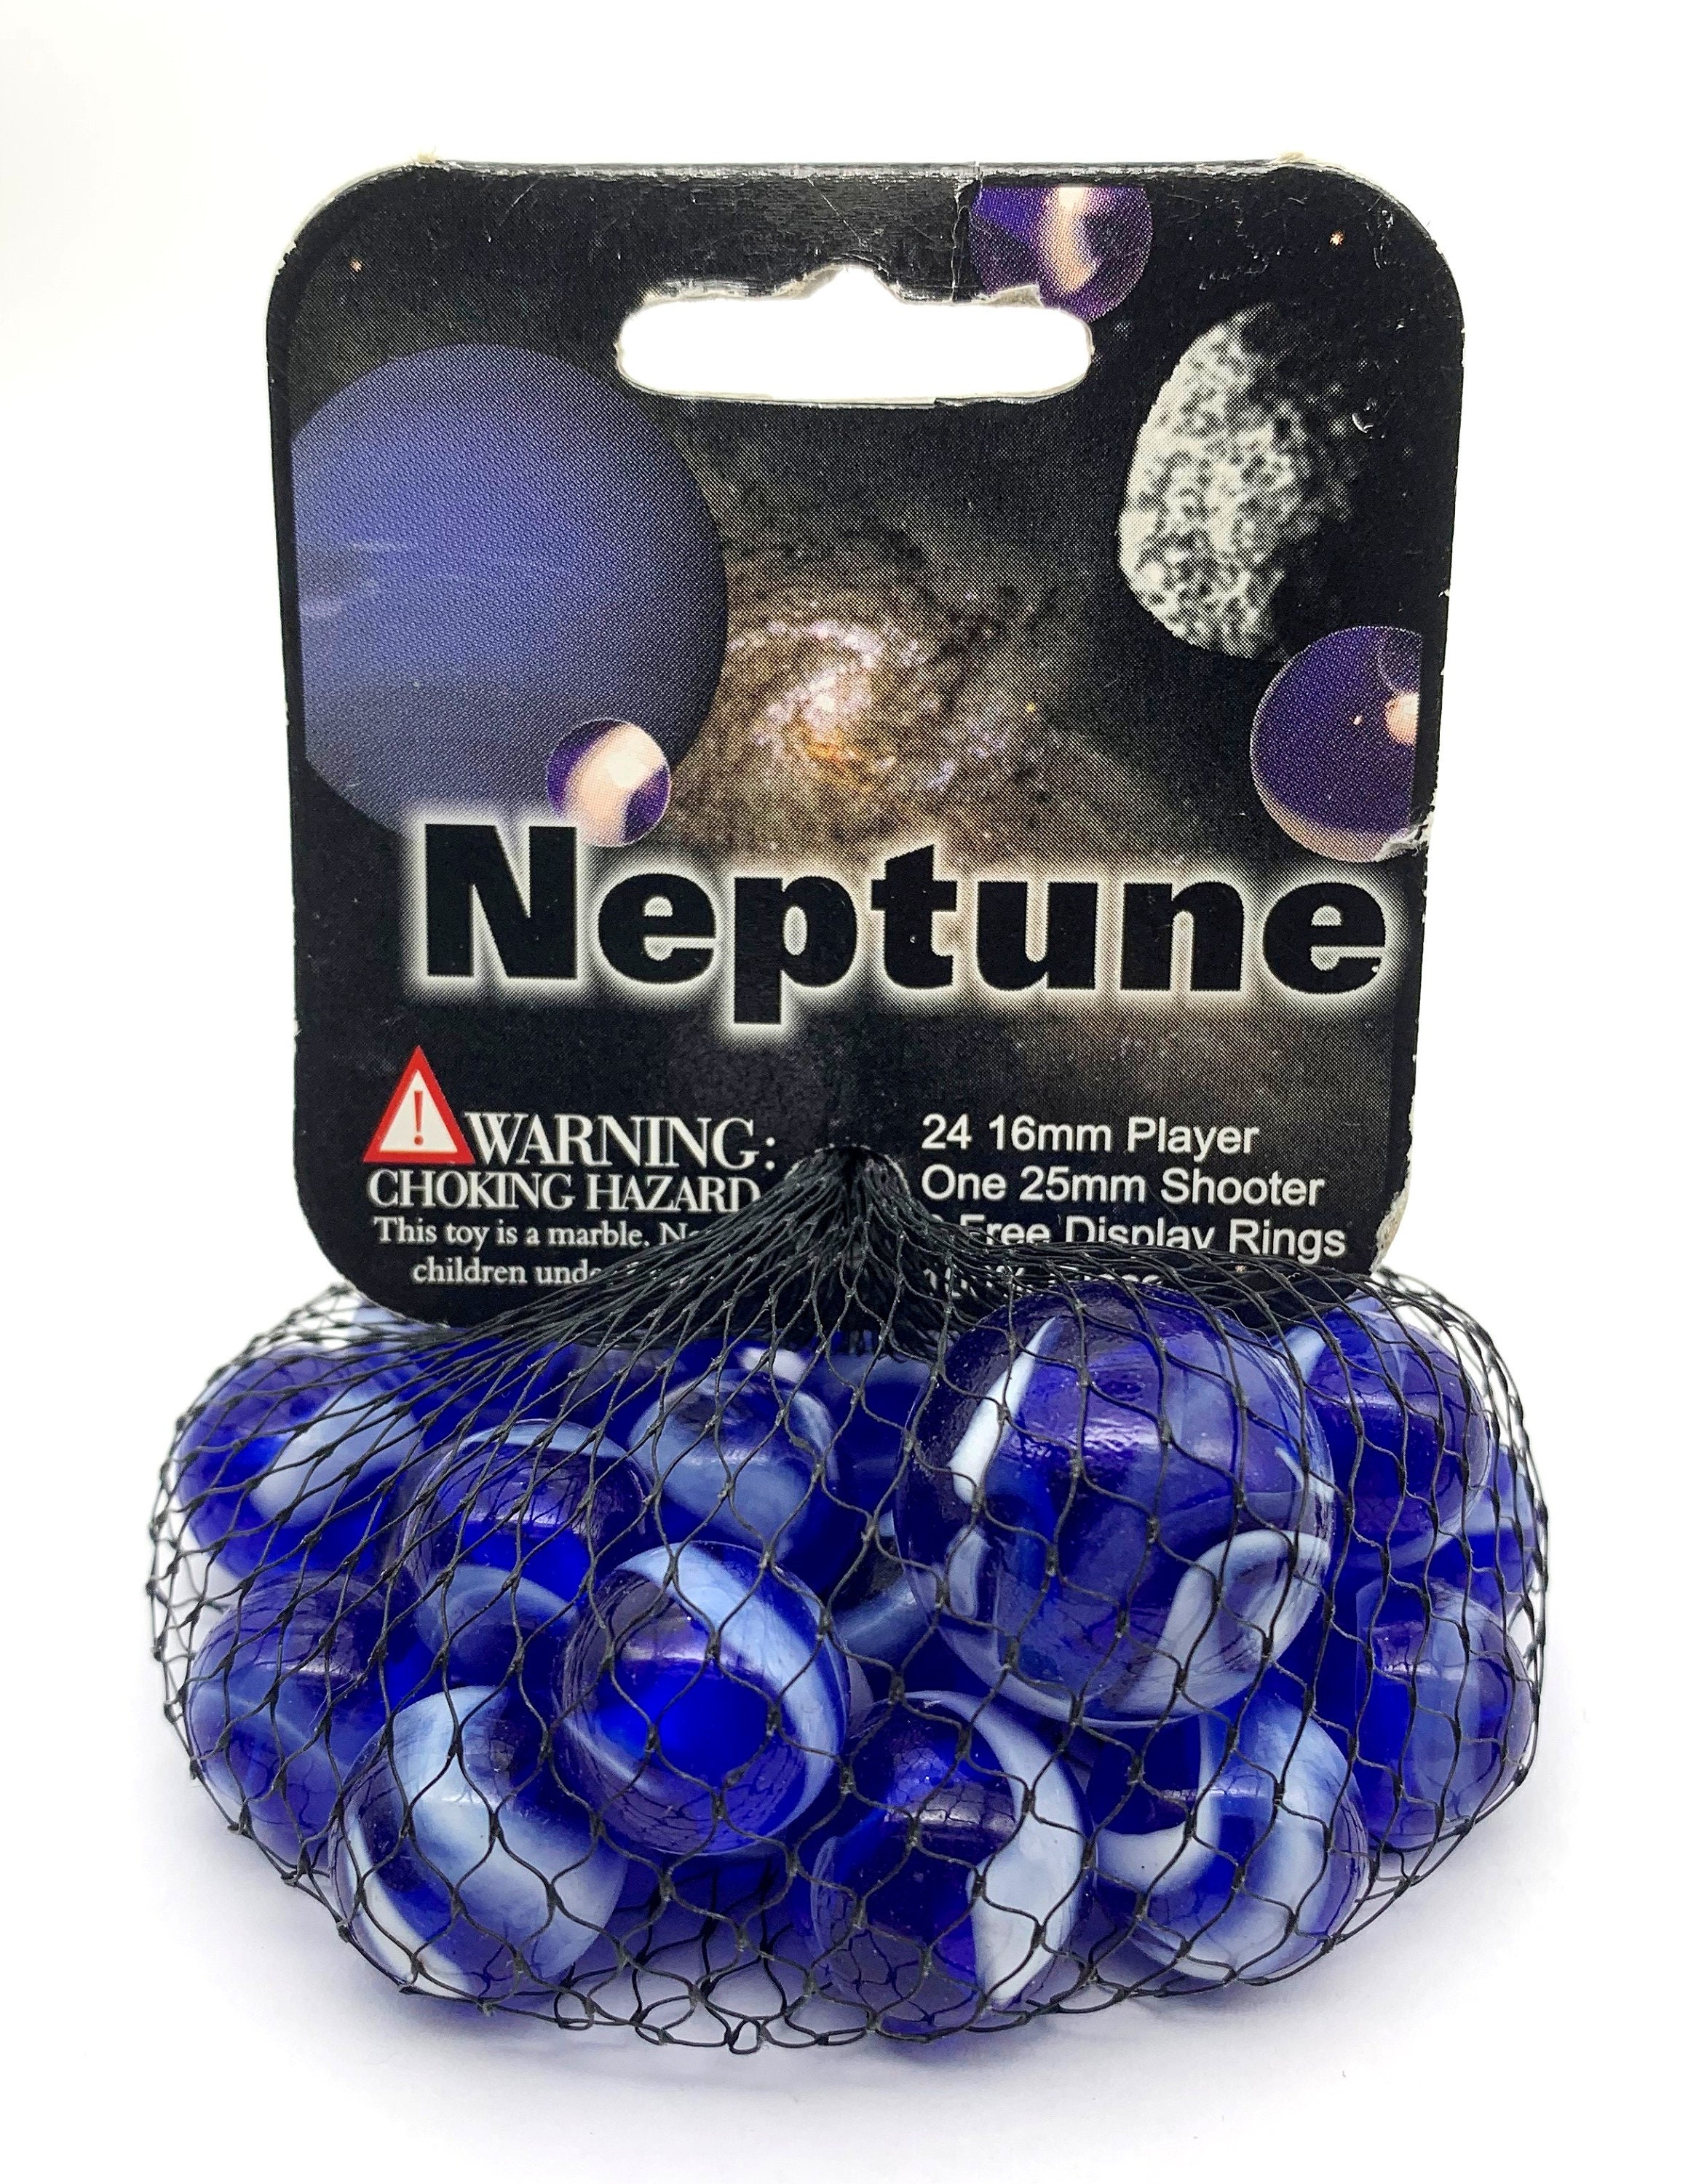 Net Bag of 25 neptune Glass Mega Marbles